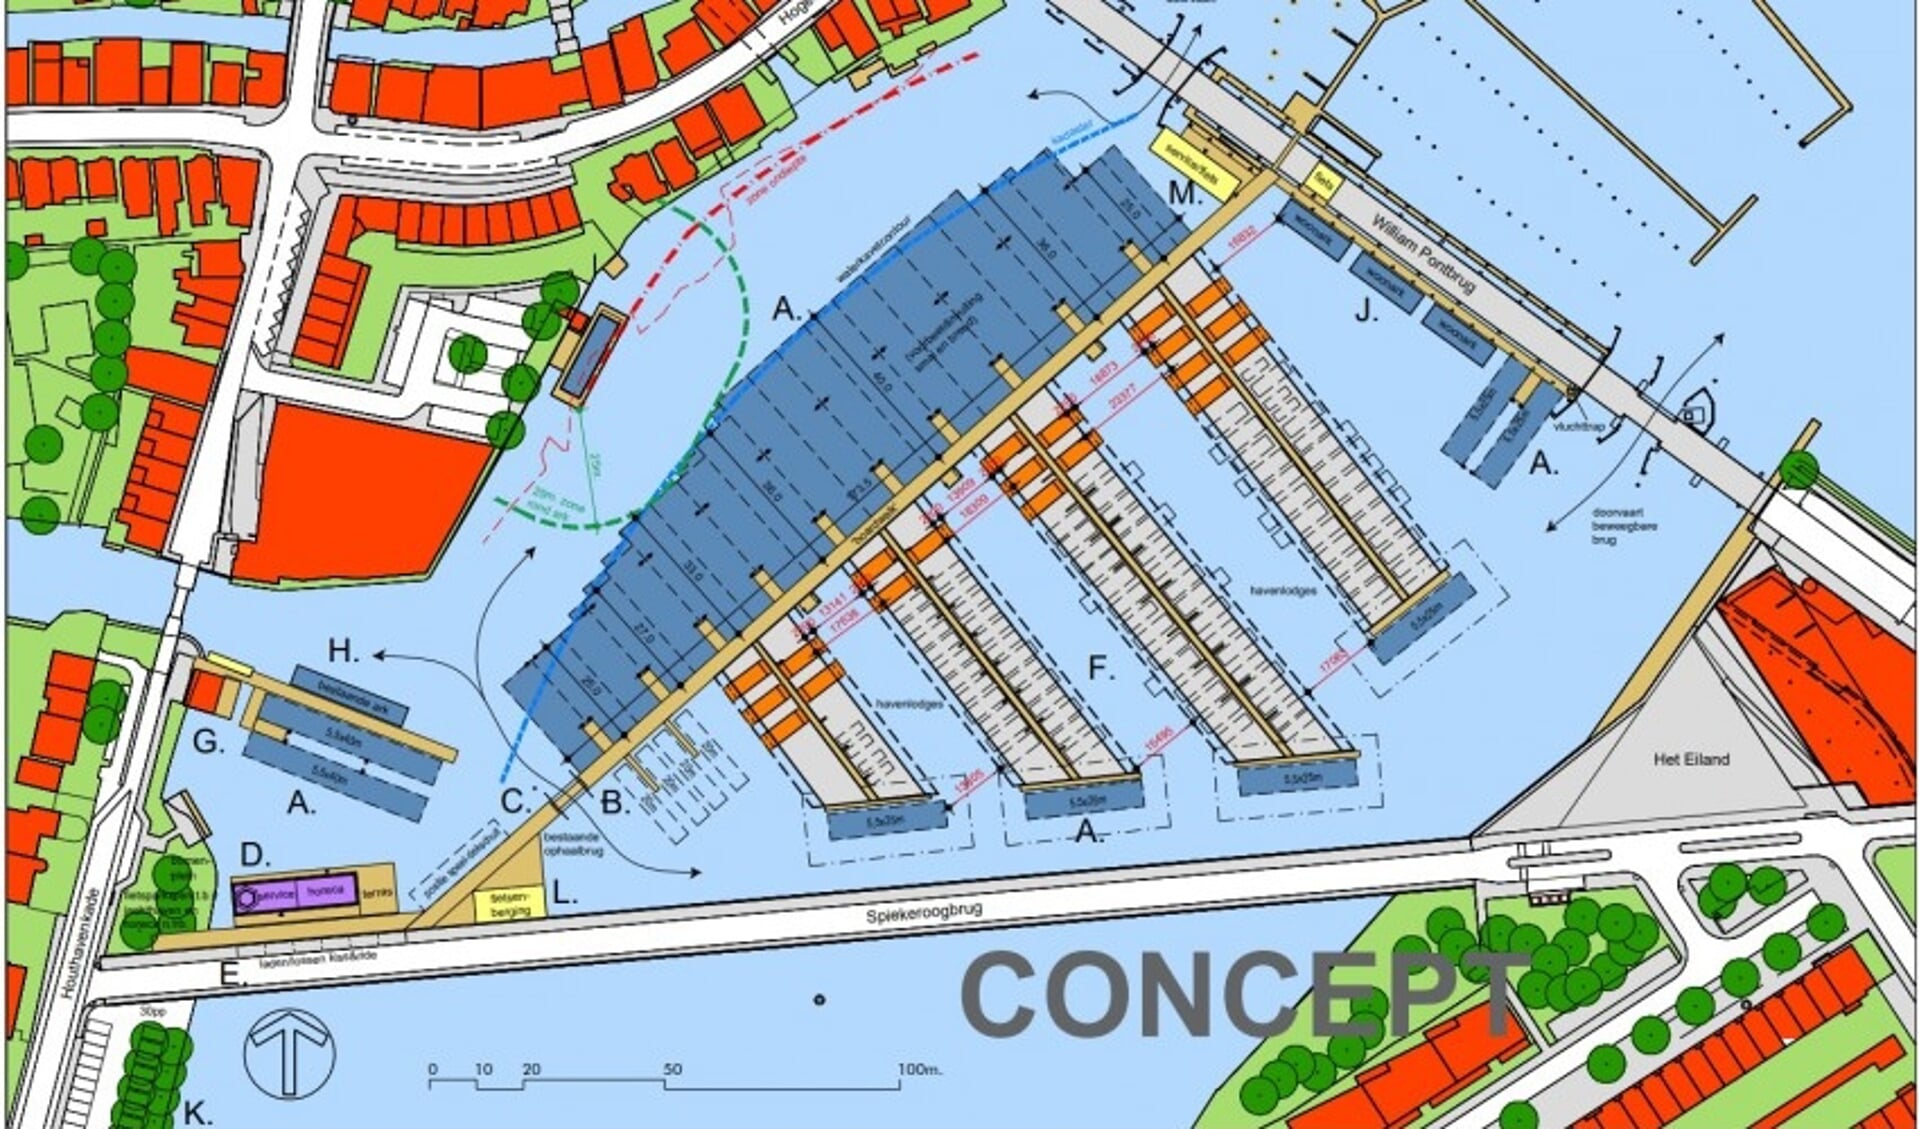 Concept van de plankaart voor de herontwikkeling van Jachthaven Dukra.